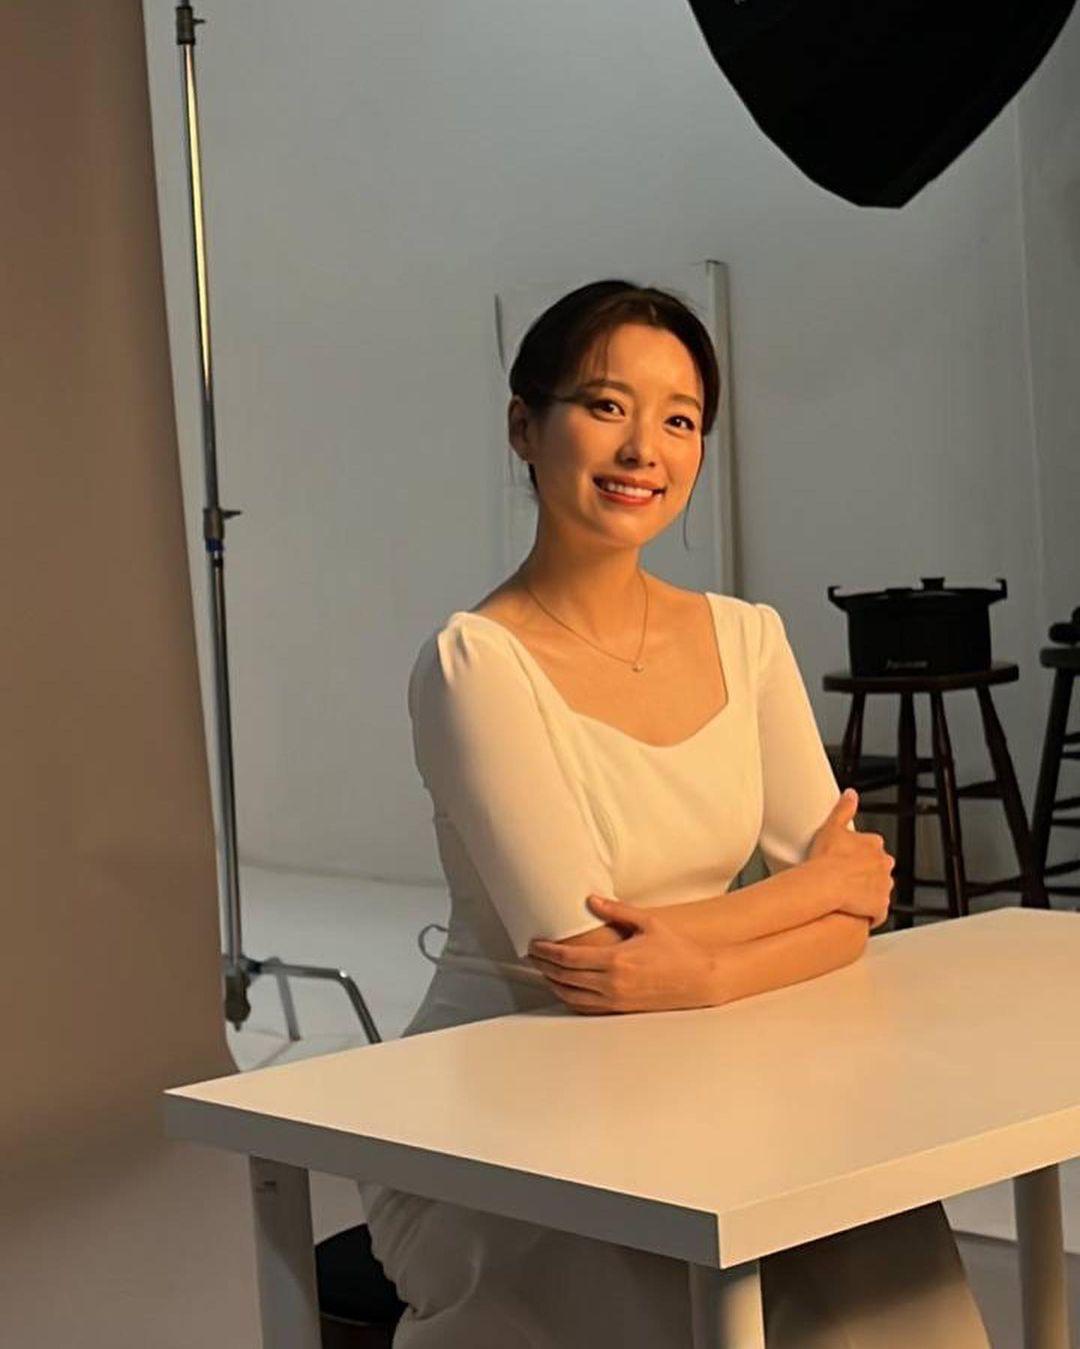 Fan phấn khích trước loạt ảnh hậu trường như chụp ảnh cưới của “mỹ nhân có nụ cười đẹp nhất xứ Hàn” Han Hyo Joo  - Ảnh 4